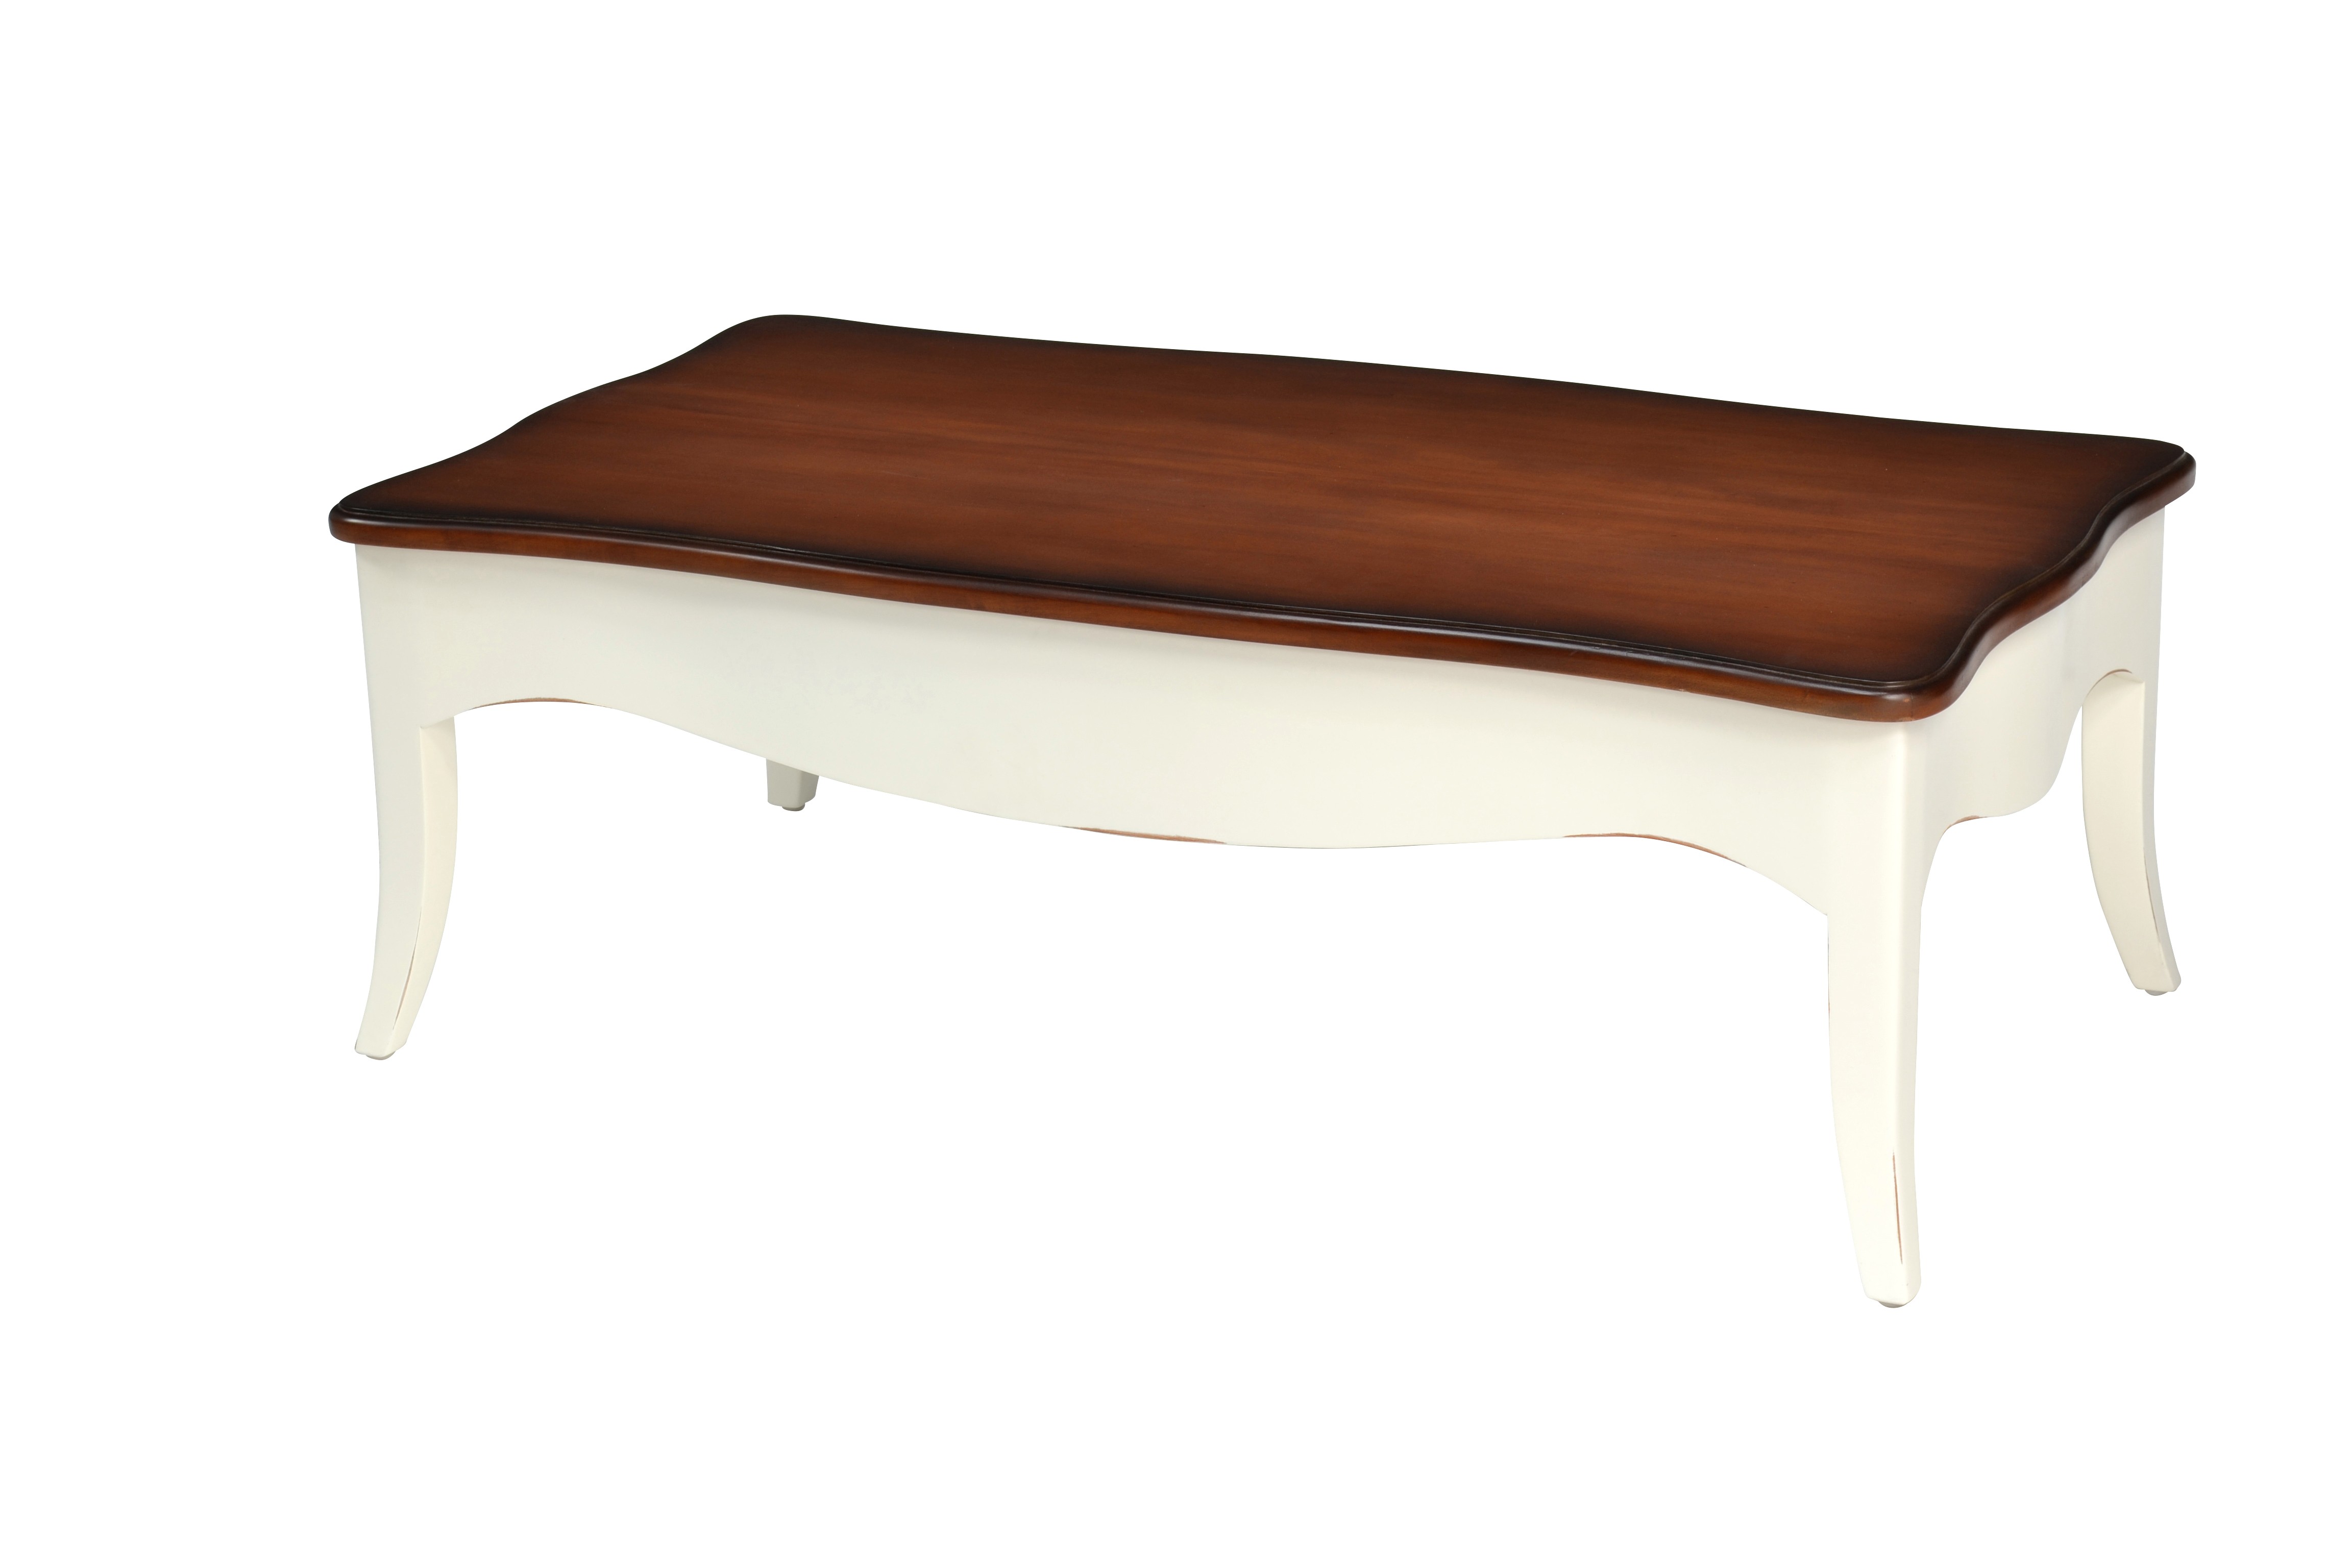 Estila Provence luxusní konferenční stolek Deliciosa bílé barvy s polohovatelnou vrchní deskou 130cm